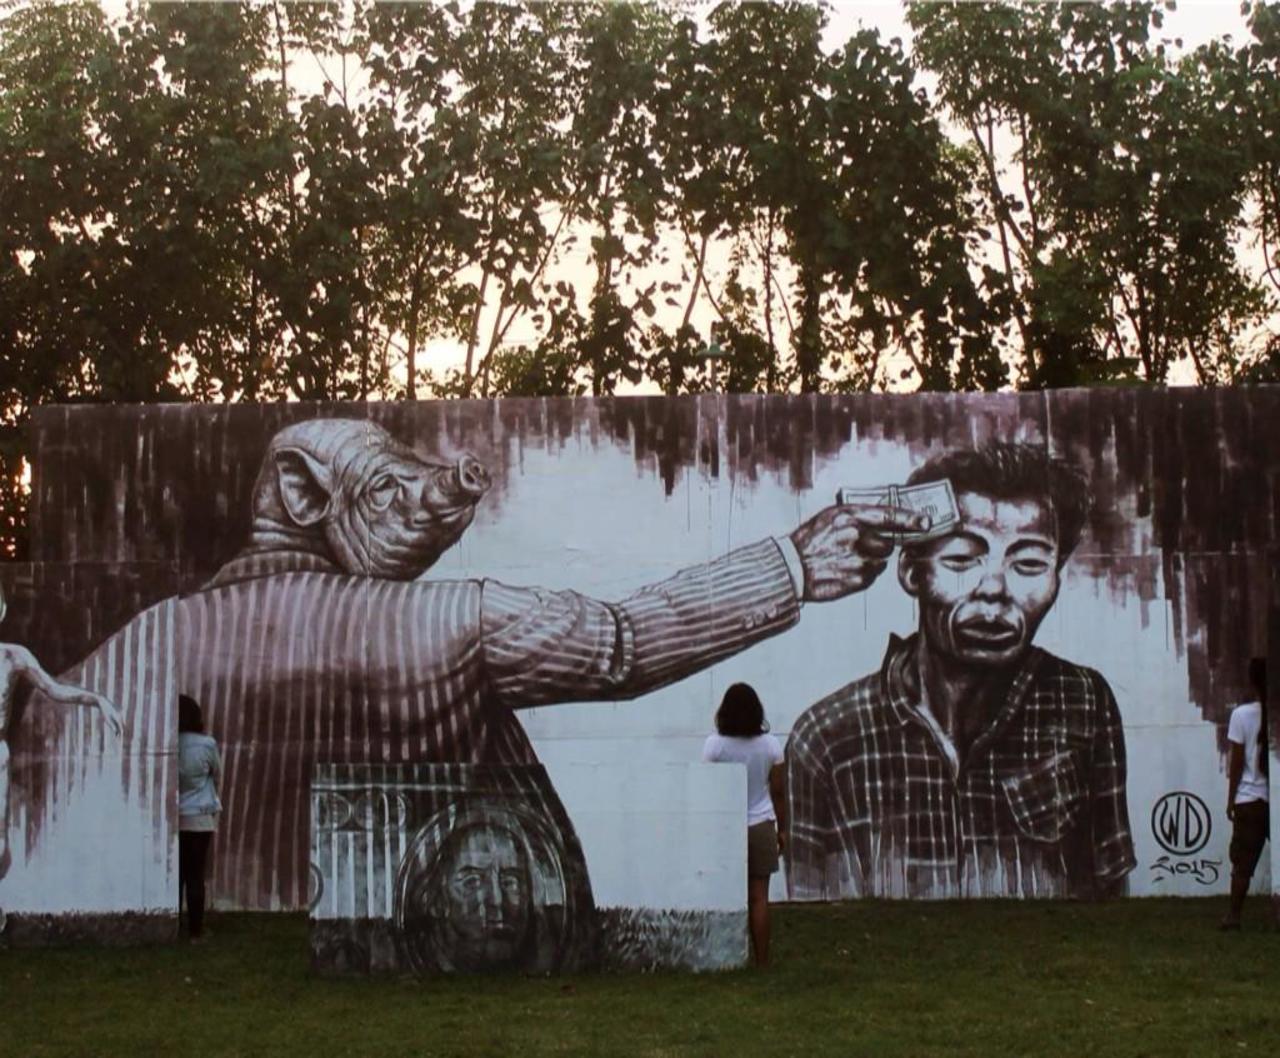 'Money Kills'
Street Art by the artist WD

#art #arte #graffiti #streetart http://t.co/xAjHYeXRS4